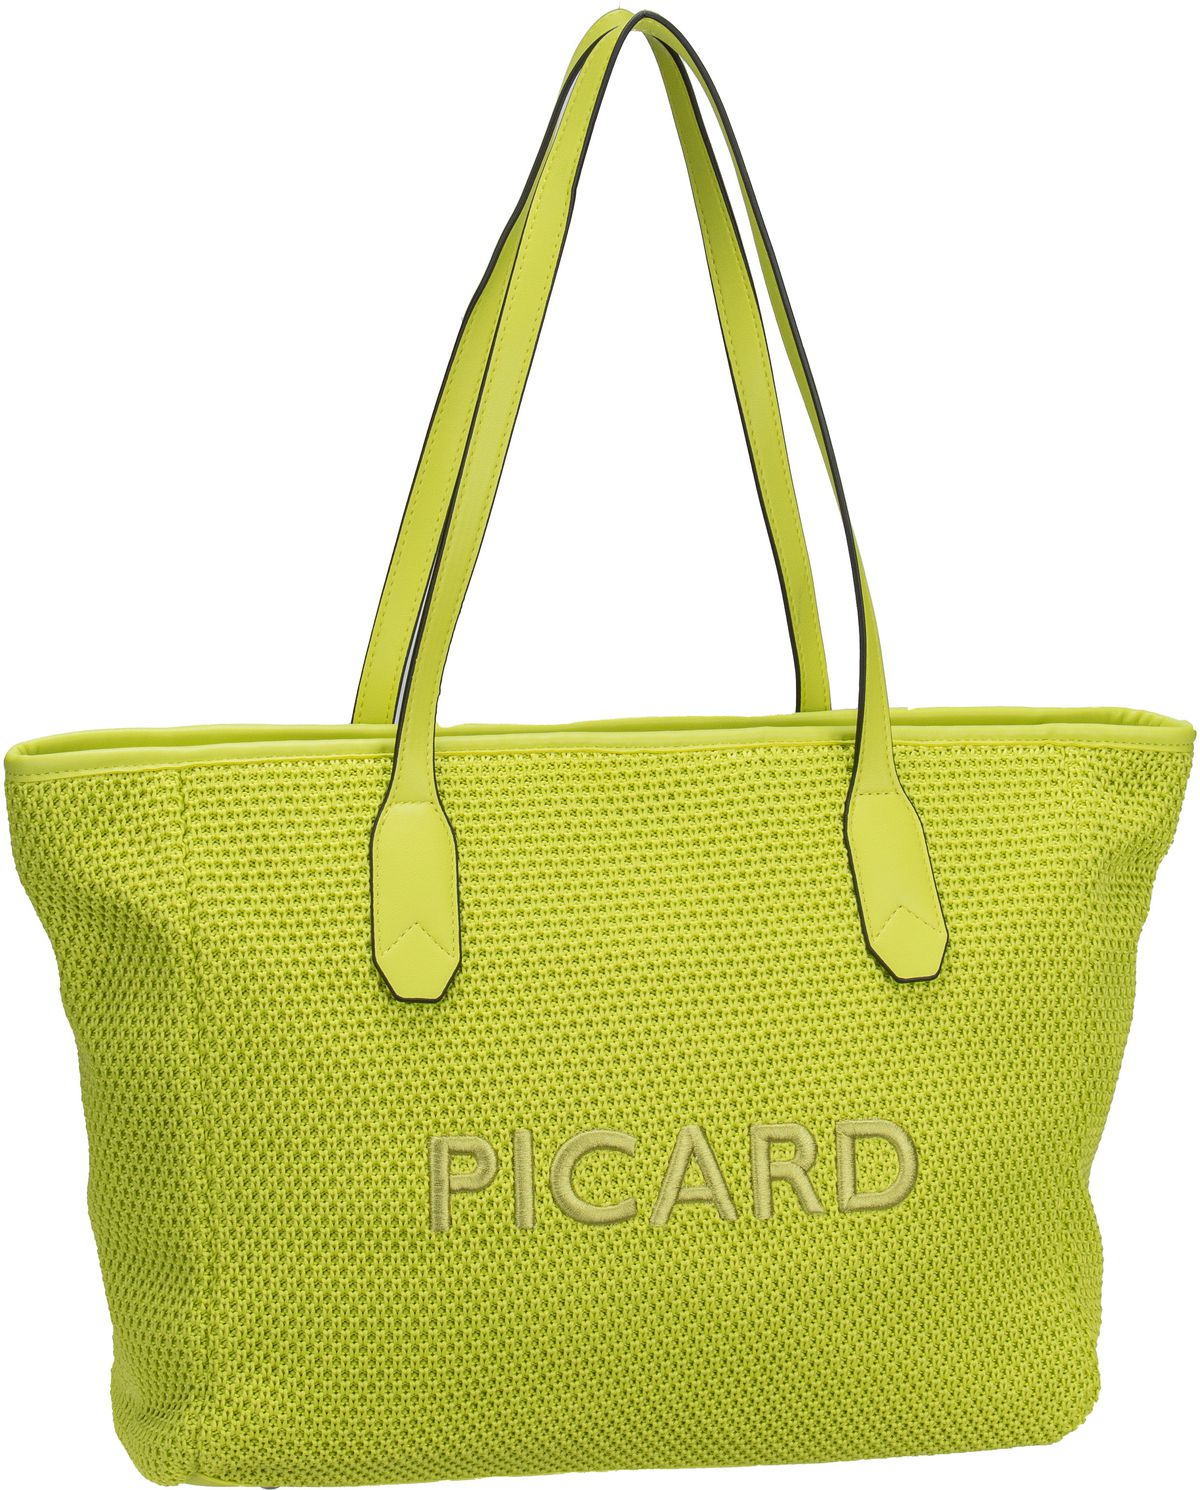 Picard Picard Knitwork 3229 in Grün (17.1 Liter), Shopper